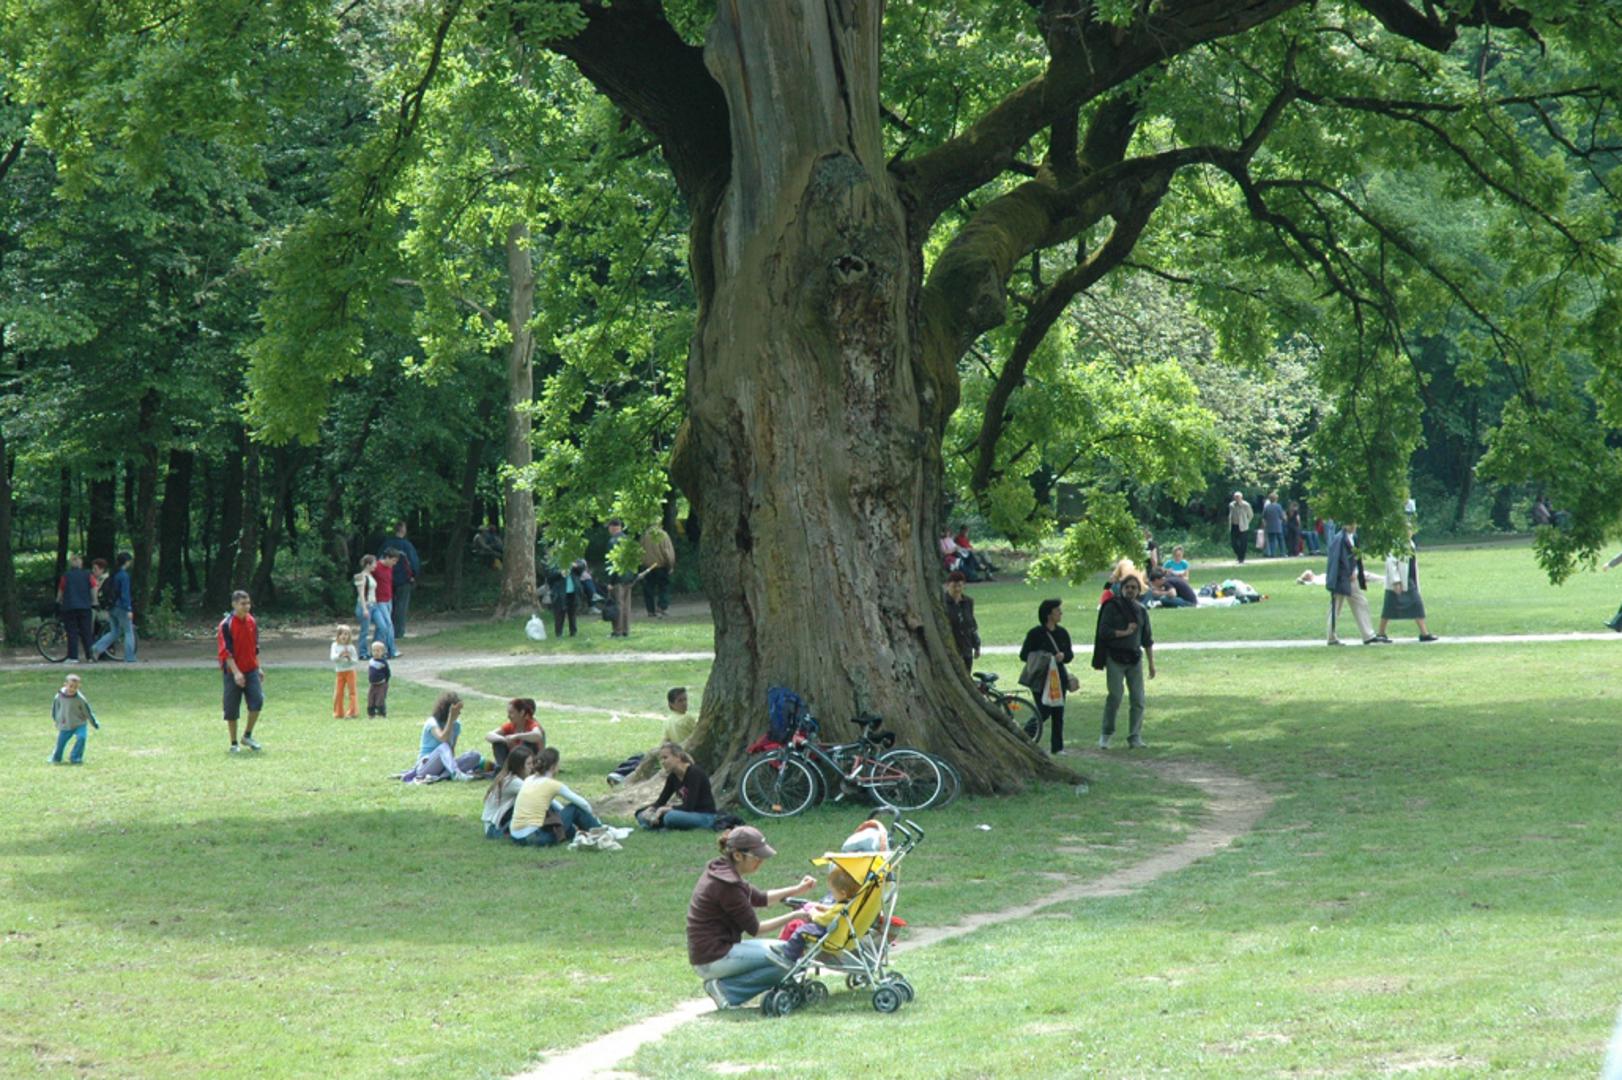 Hrast Dedek - Stanovnik parka Maksimir, 600 godina je star hrast lužnjak. Jedino je stablo u parku koje je dobilo ime